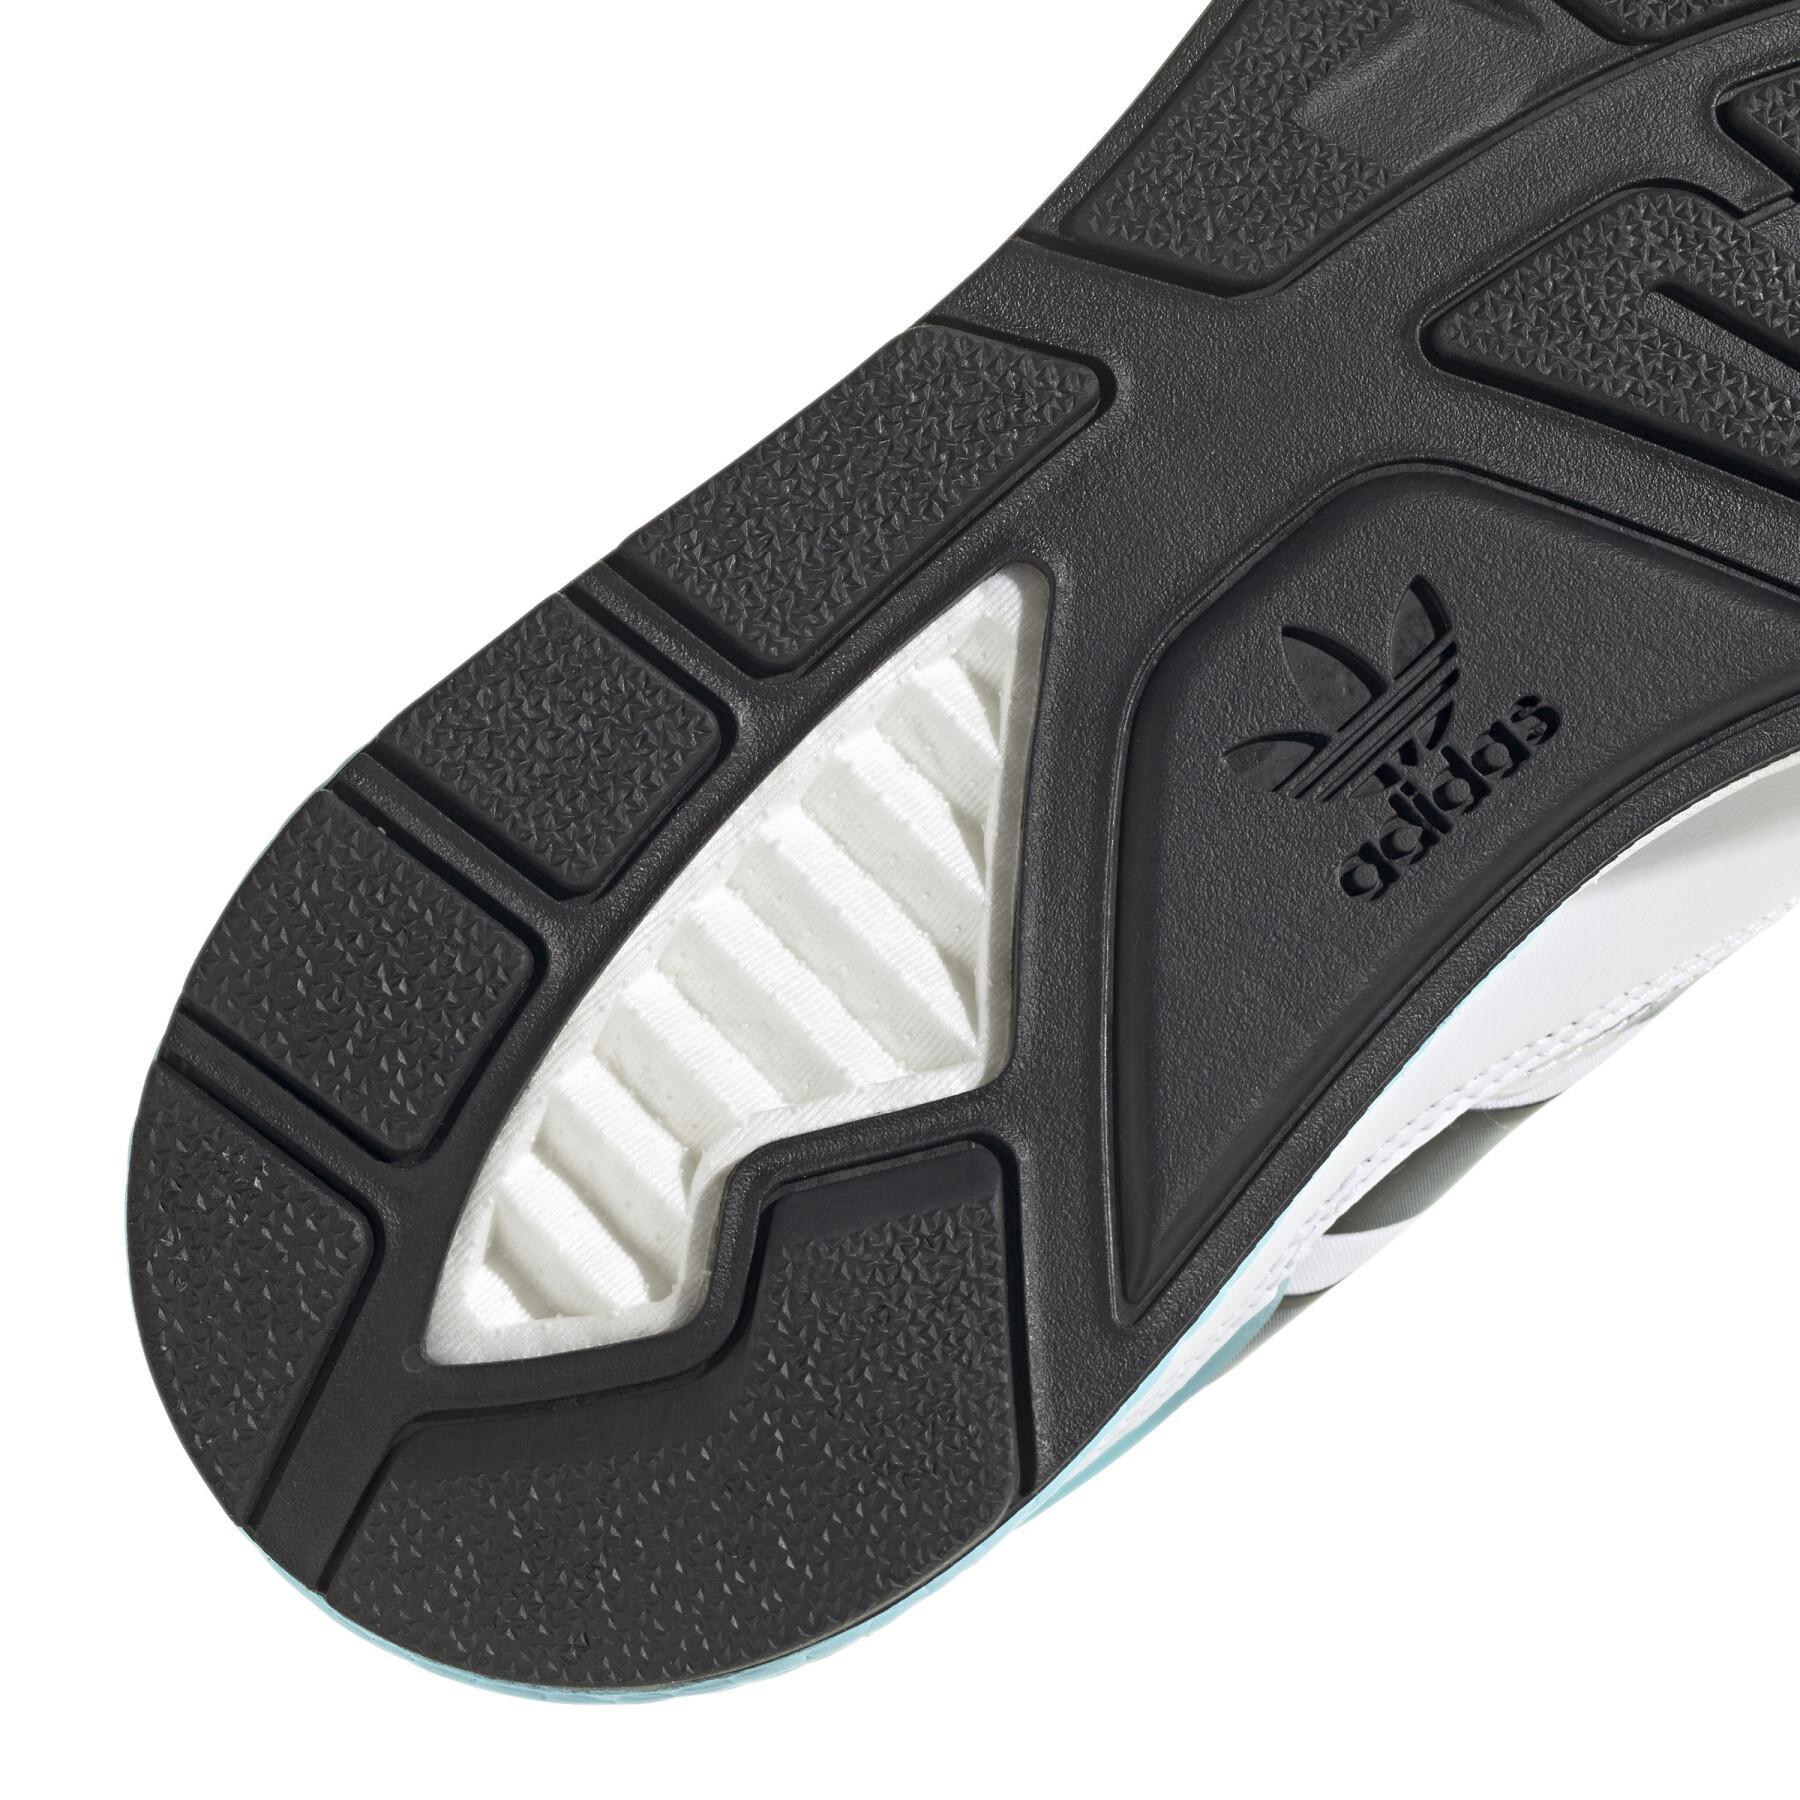 Sneakers adidas Originals ZX 1K BOOST 2.0